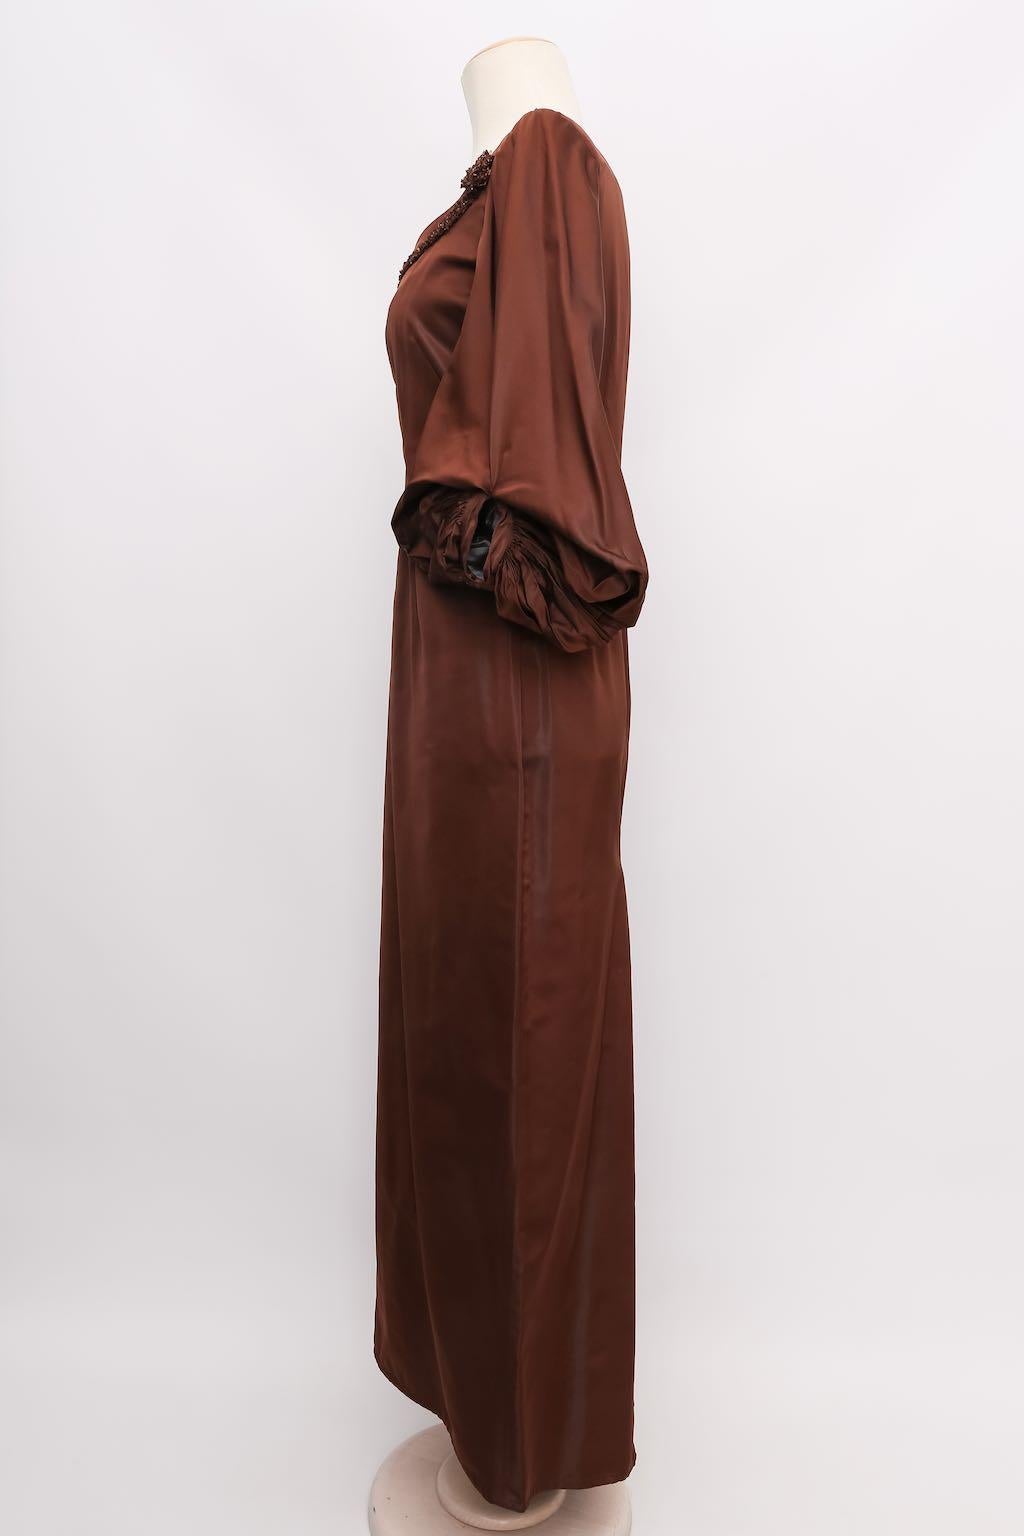 Jean-Paul Gaultier Taffeta Dress, Size 38FR For Sale 1